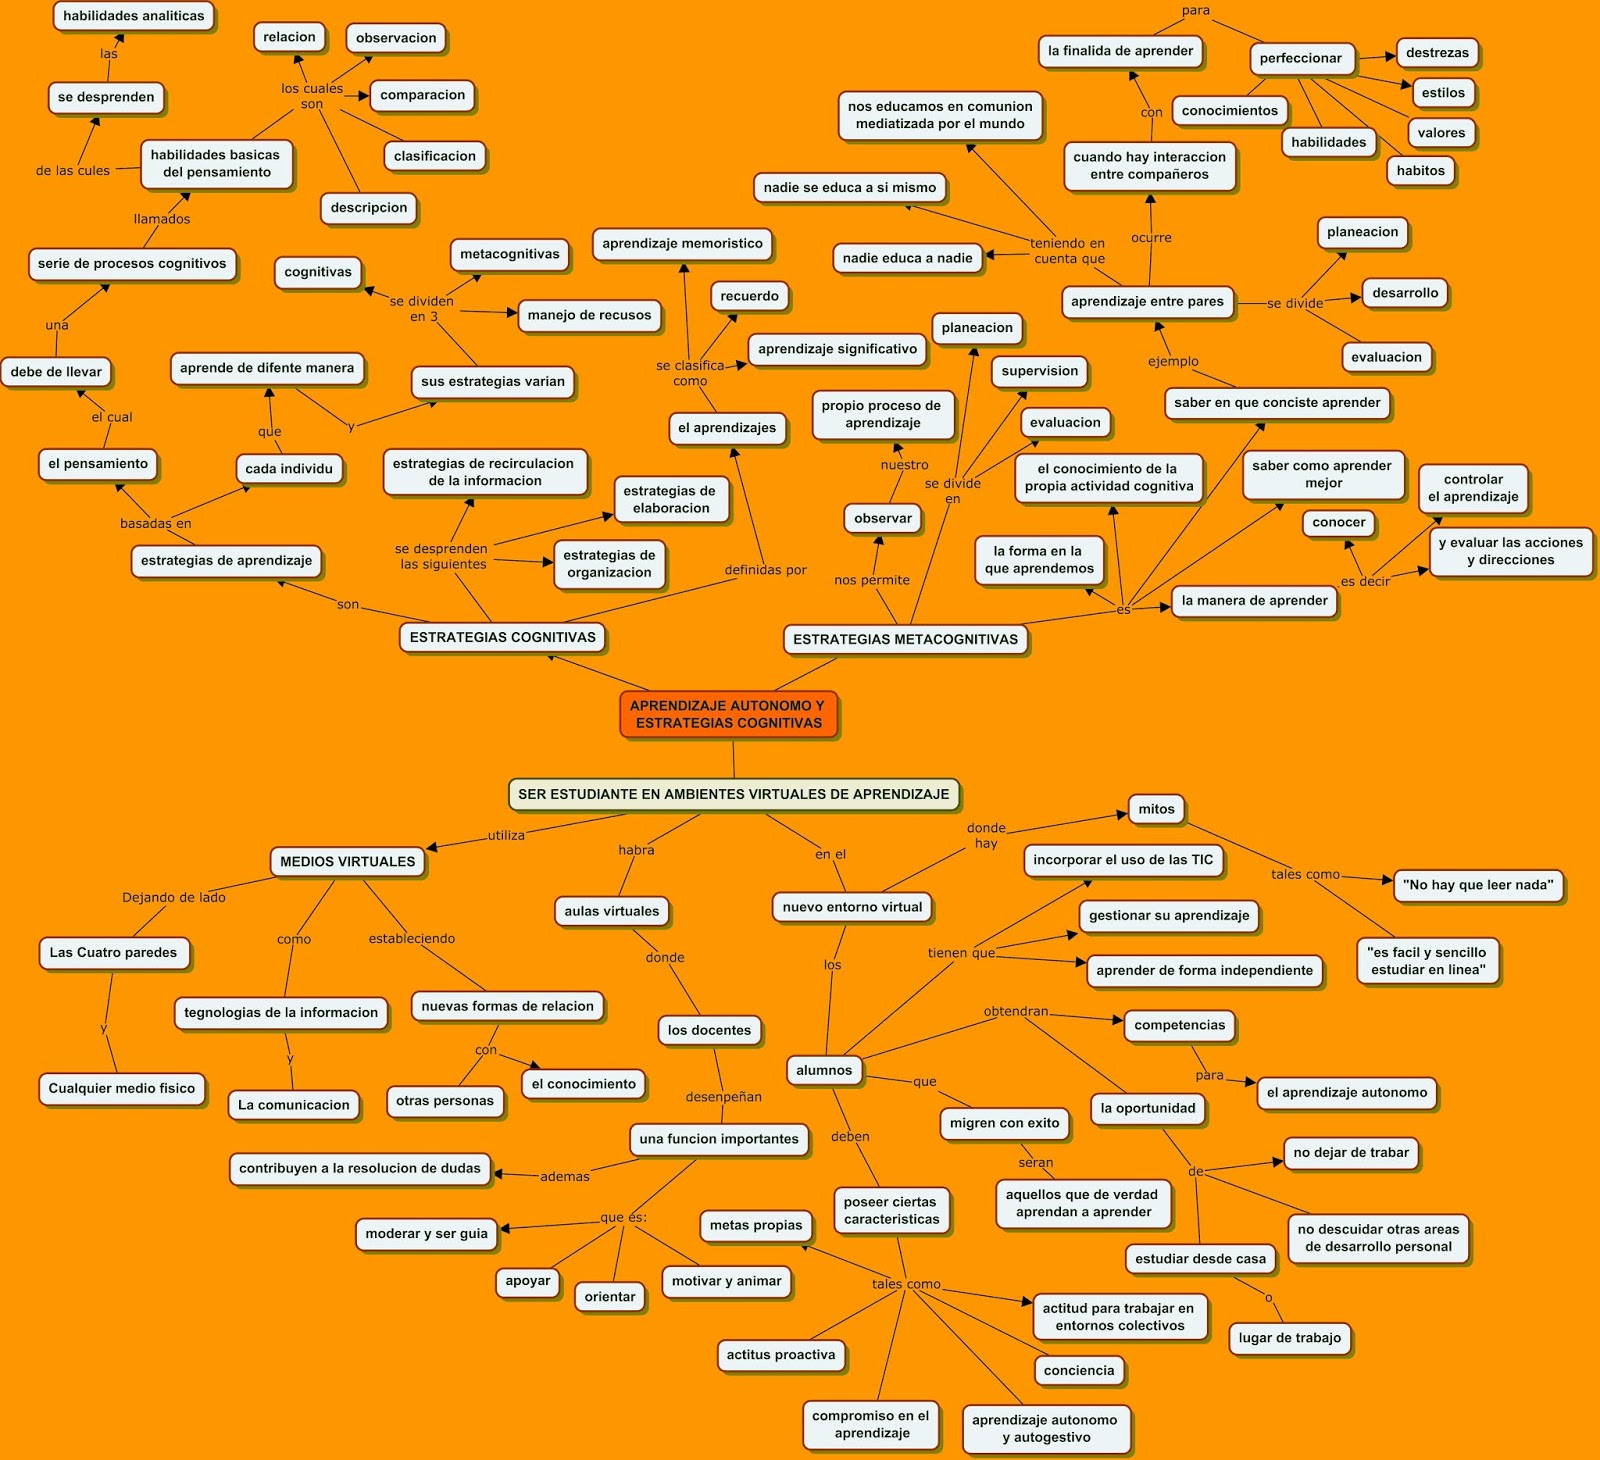 Blog Academico Mapa Conceptual Aprendizaje Aut Nomo Y Estrategias 9100